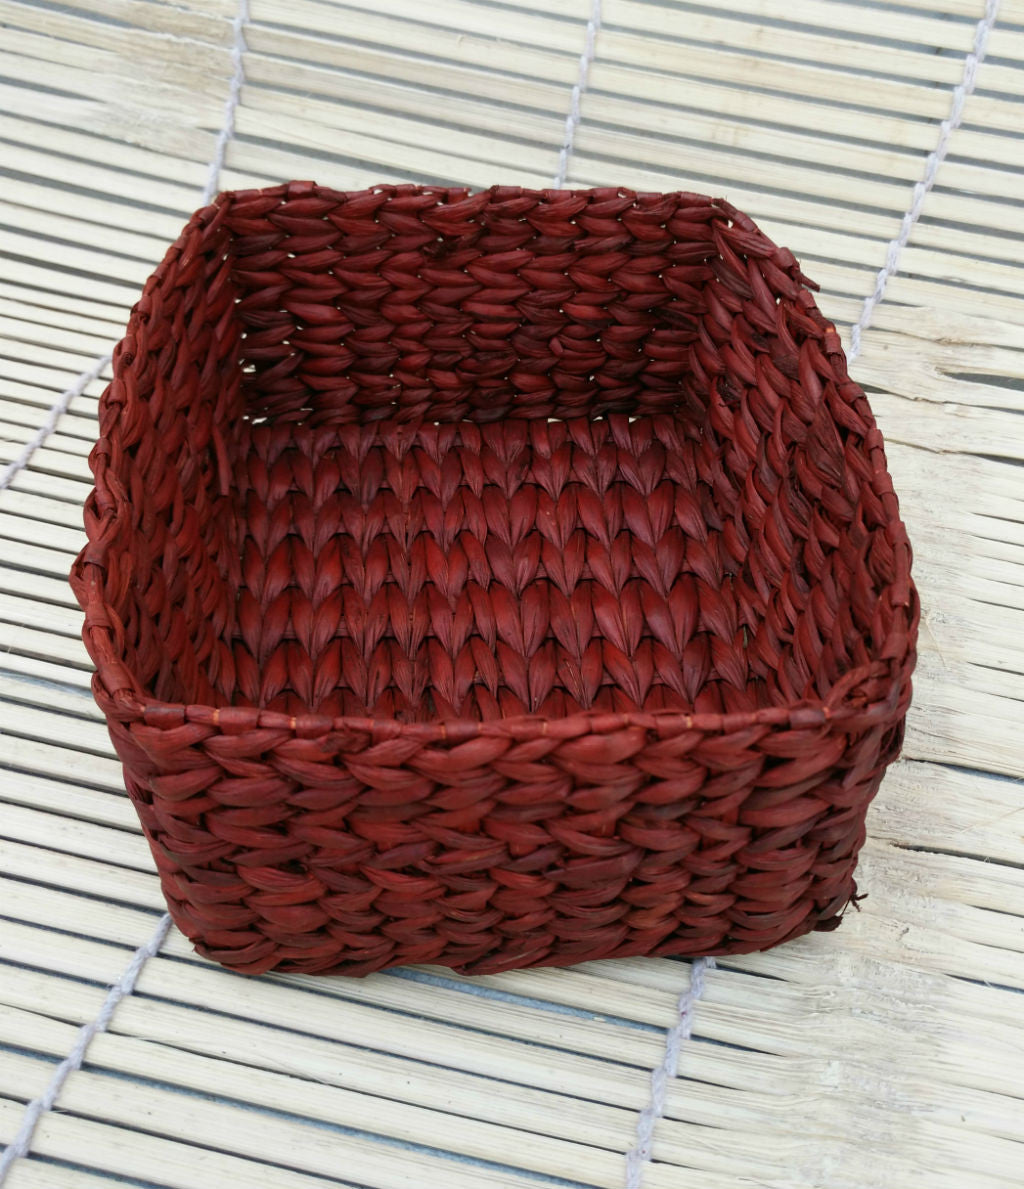 Handwoven Cane Fruit Basket